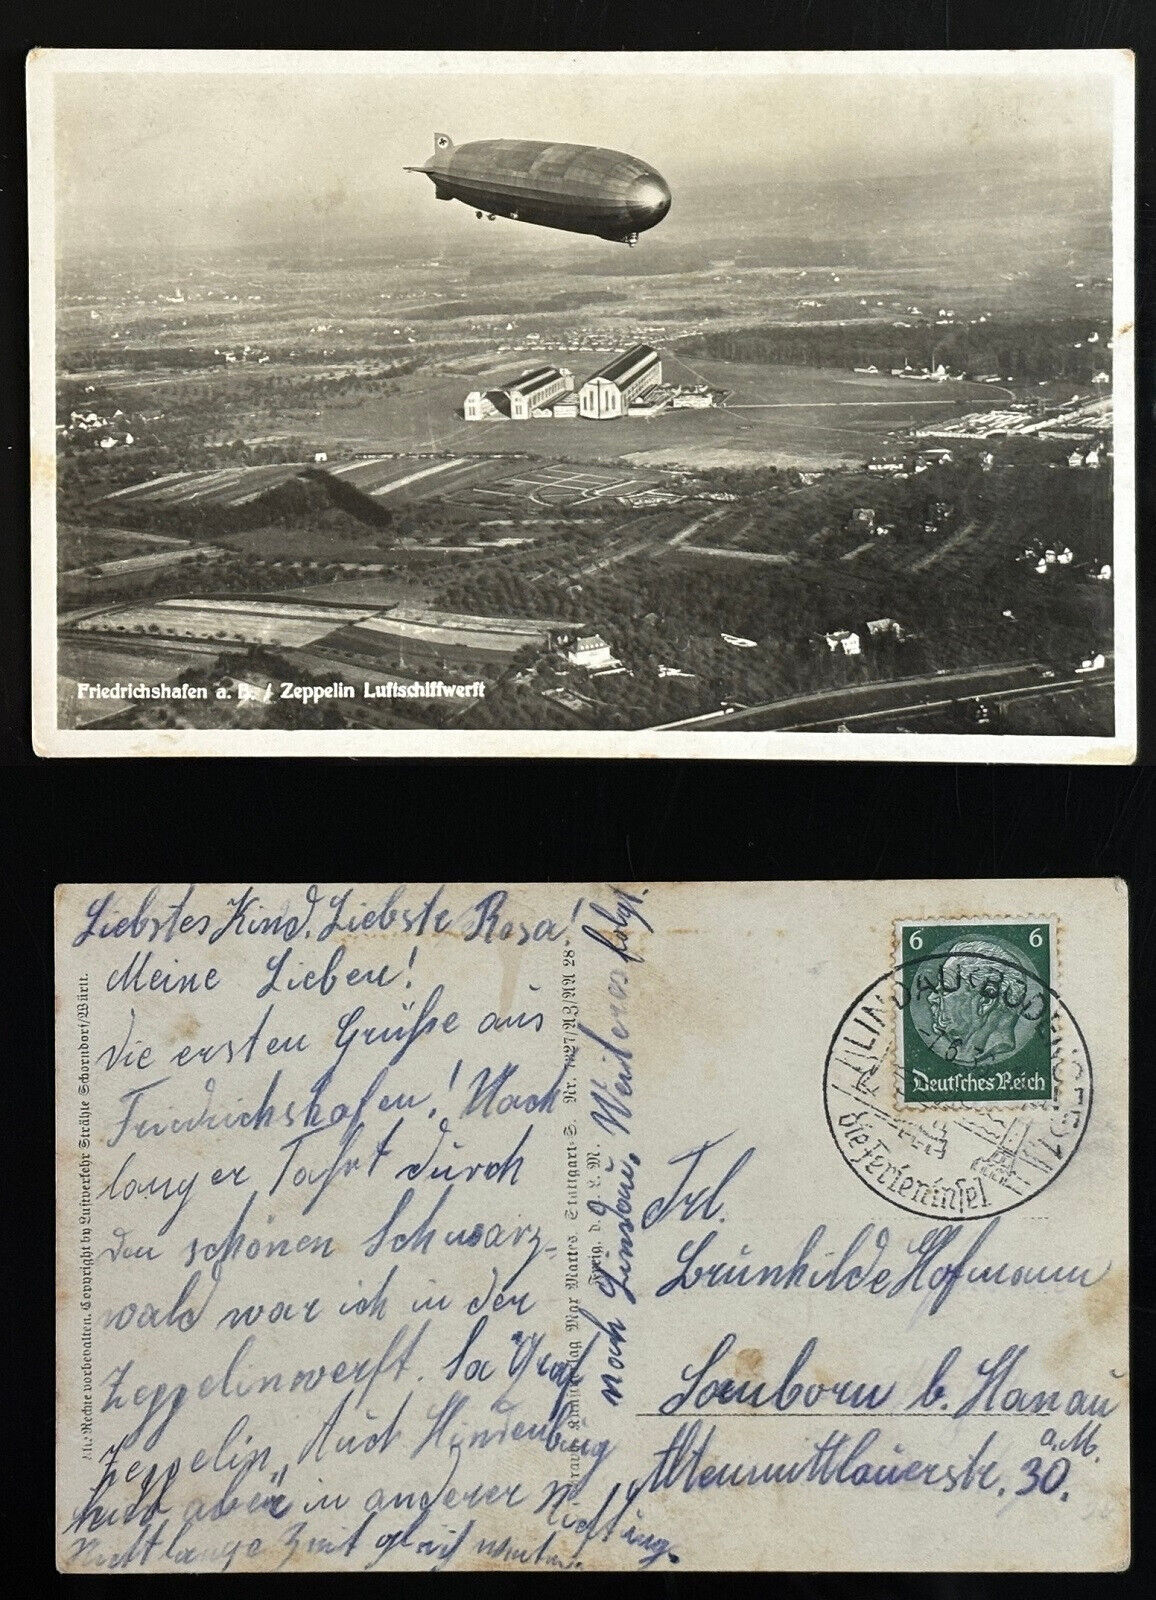 1936 posted Zeppelin in flight above hangar Friedrichshafen Germany stamp cancel